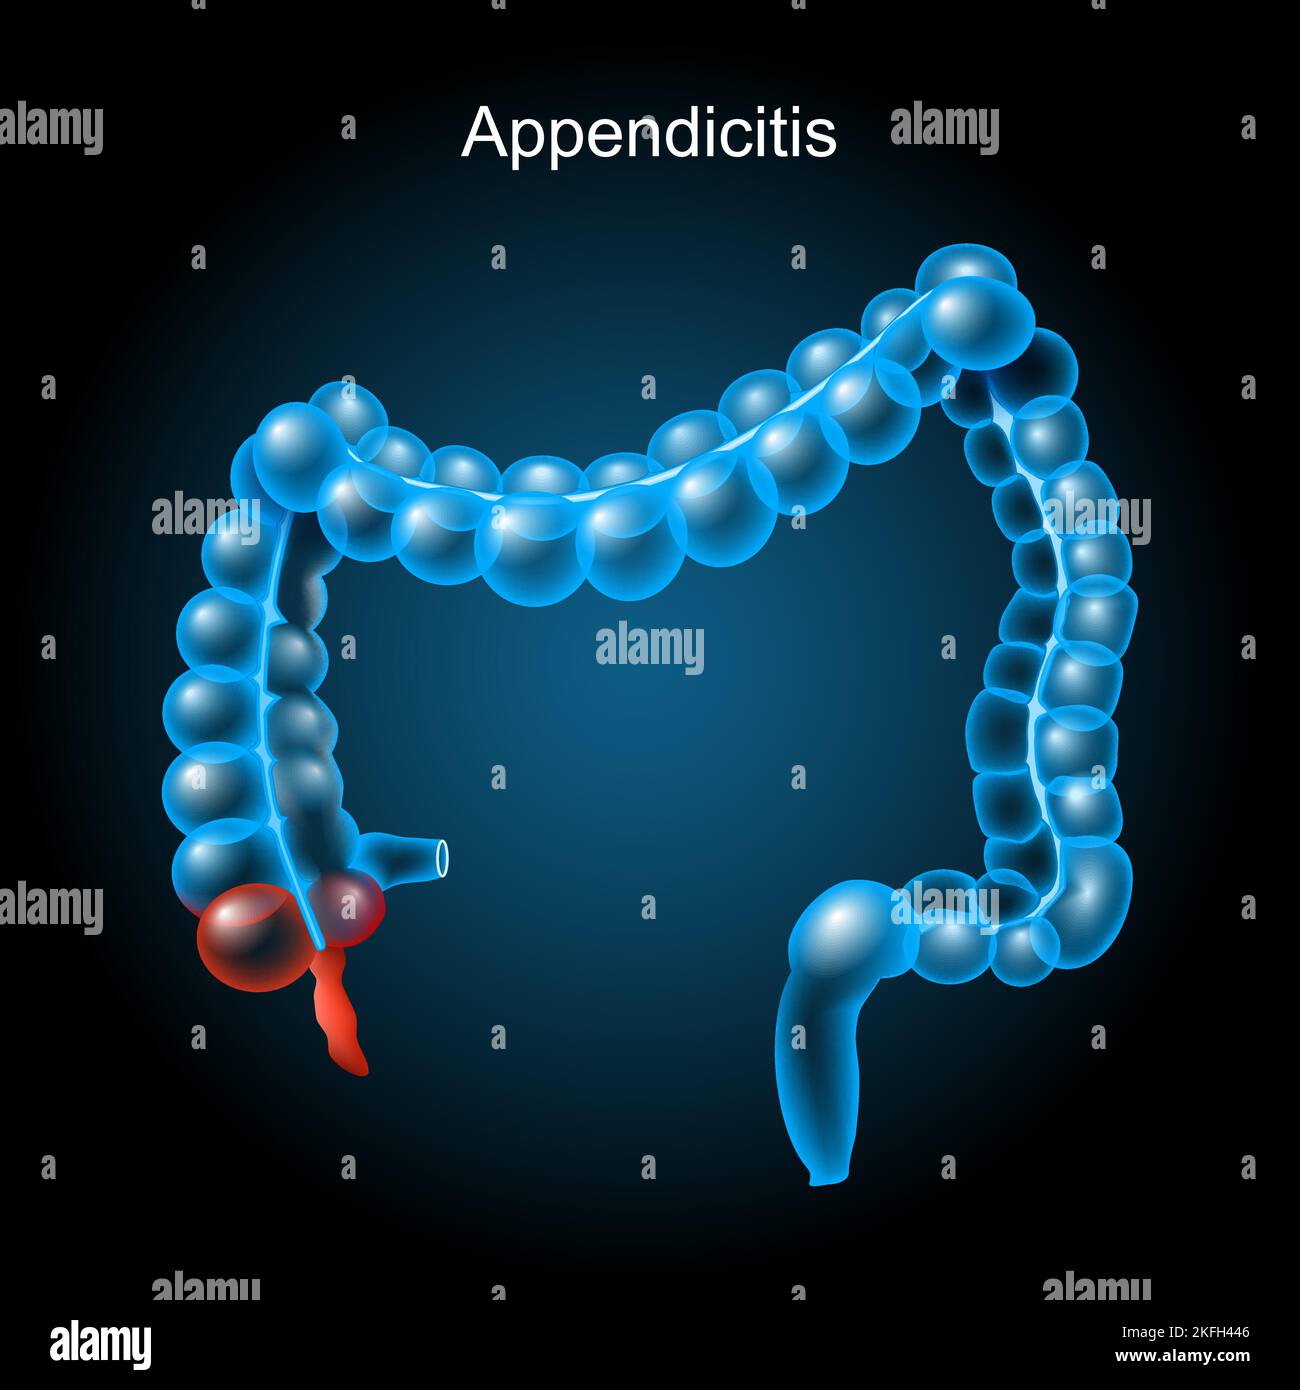 Appendicite. Inflammation de l'appendice. Gros intestin sur fond sombre. Tractus gastro-intestinal. Système digestif. Anatomie du corps humain. Vecteur Illustration de Vecteur